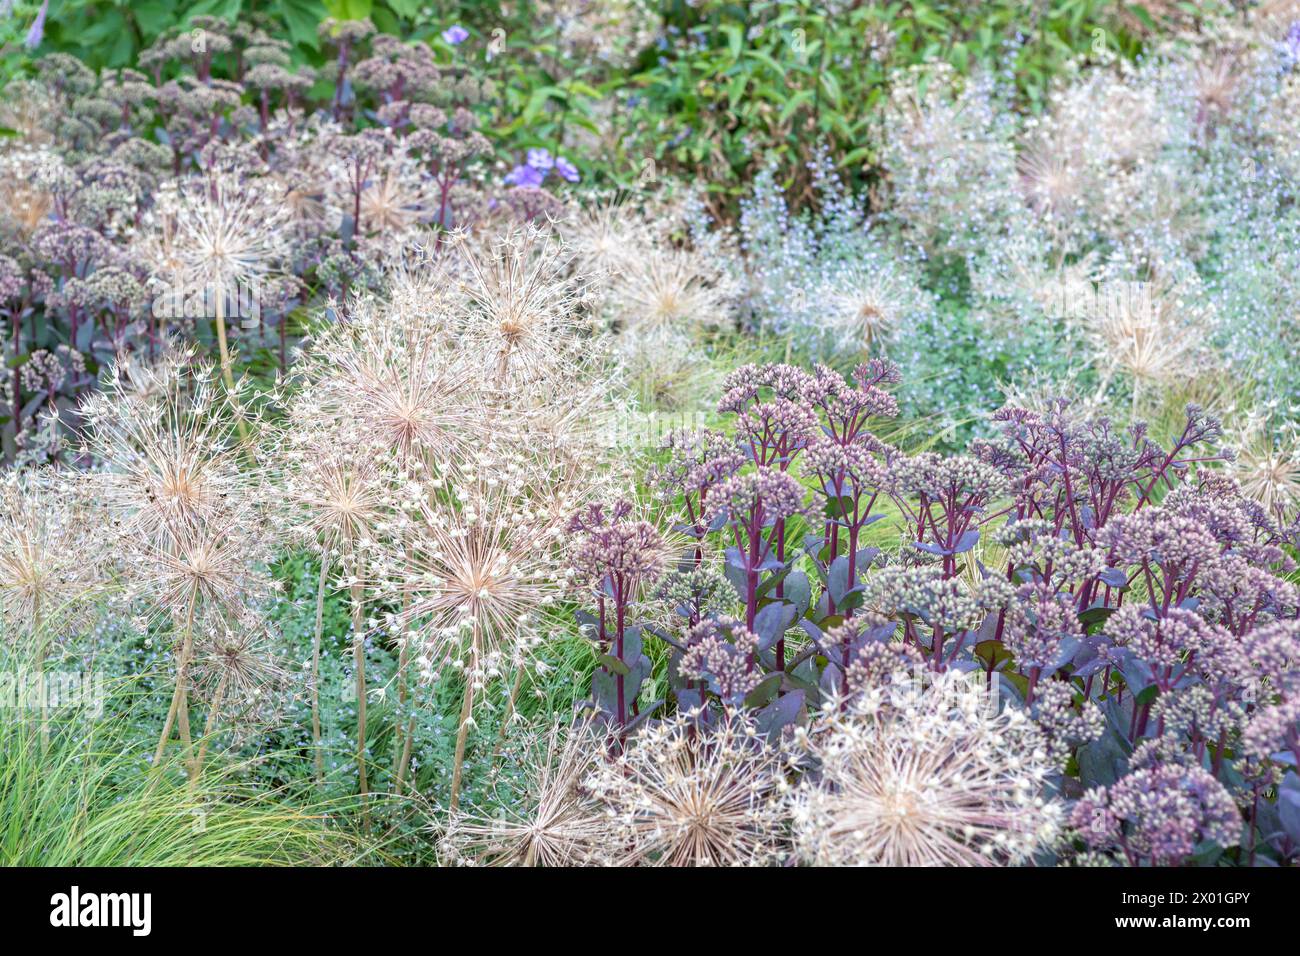 Allium cristophii / Allium christophii (Stern von Persien) Samenköpfe mit Hylotelephium 'Matrona' (Sedum / Steinkraut) in einem Blumenbeet / Grenzschema Stockfoto